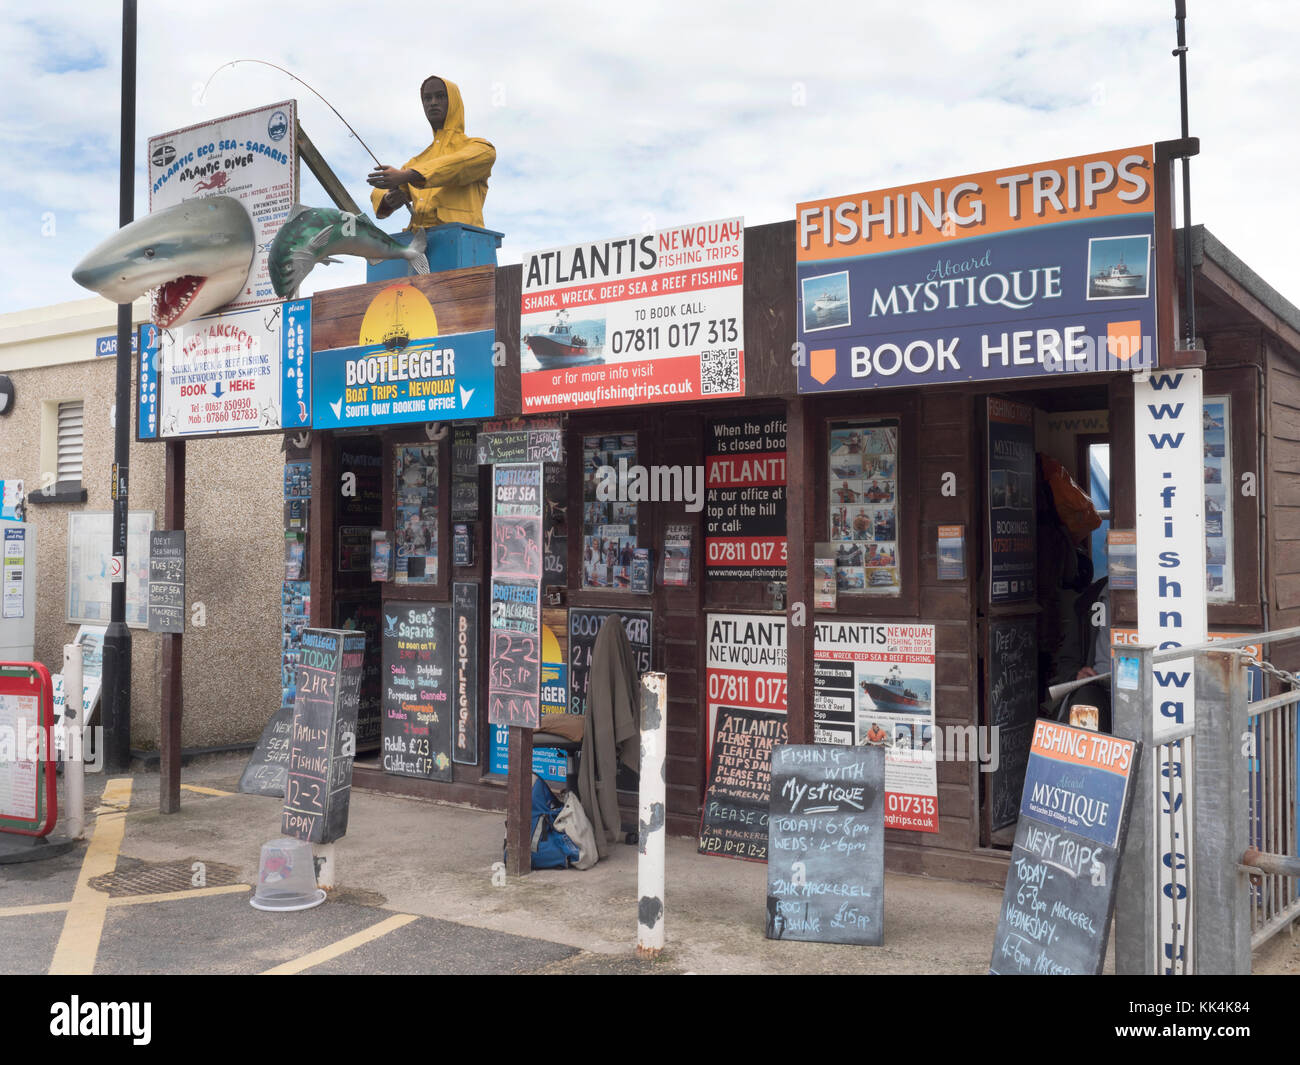 Turismo cabine di biglietteria per la pesca ed altre gite in barca, Newquay Cornwall, England, Regno Unito Foto Stock